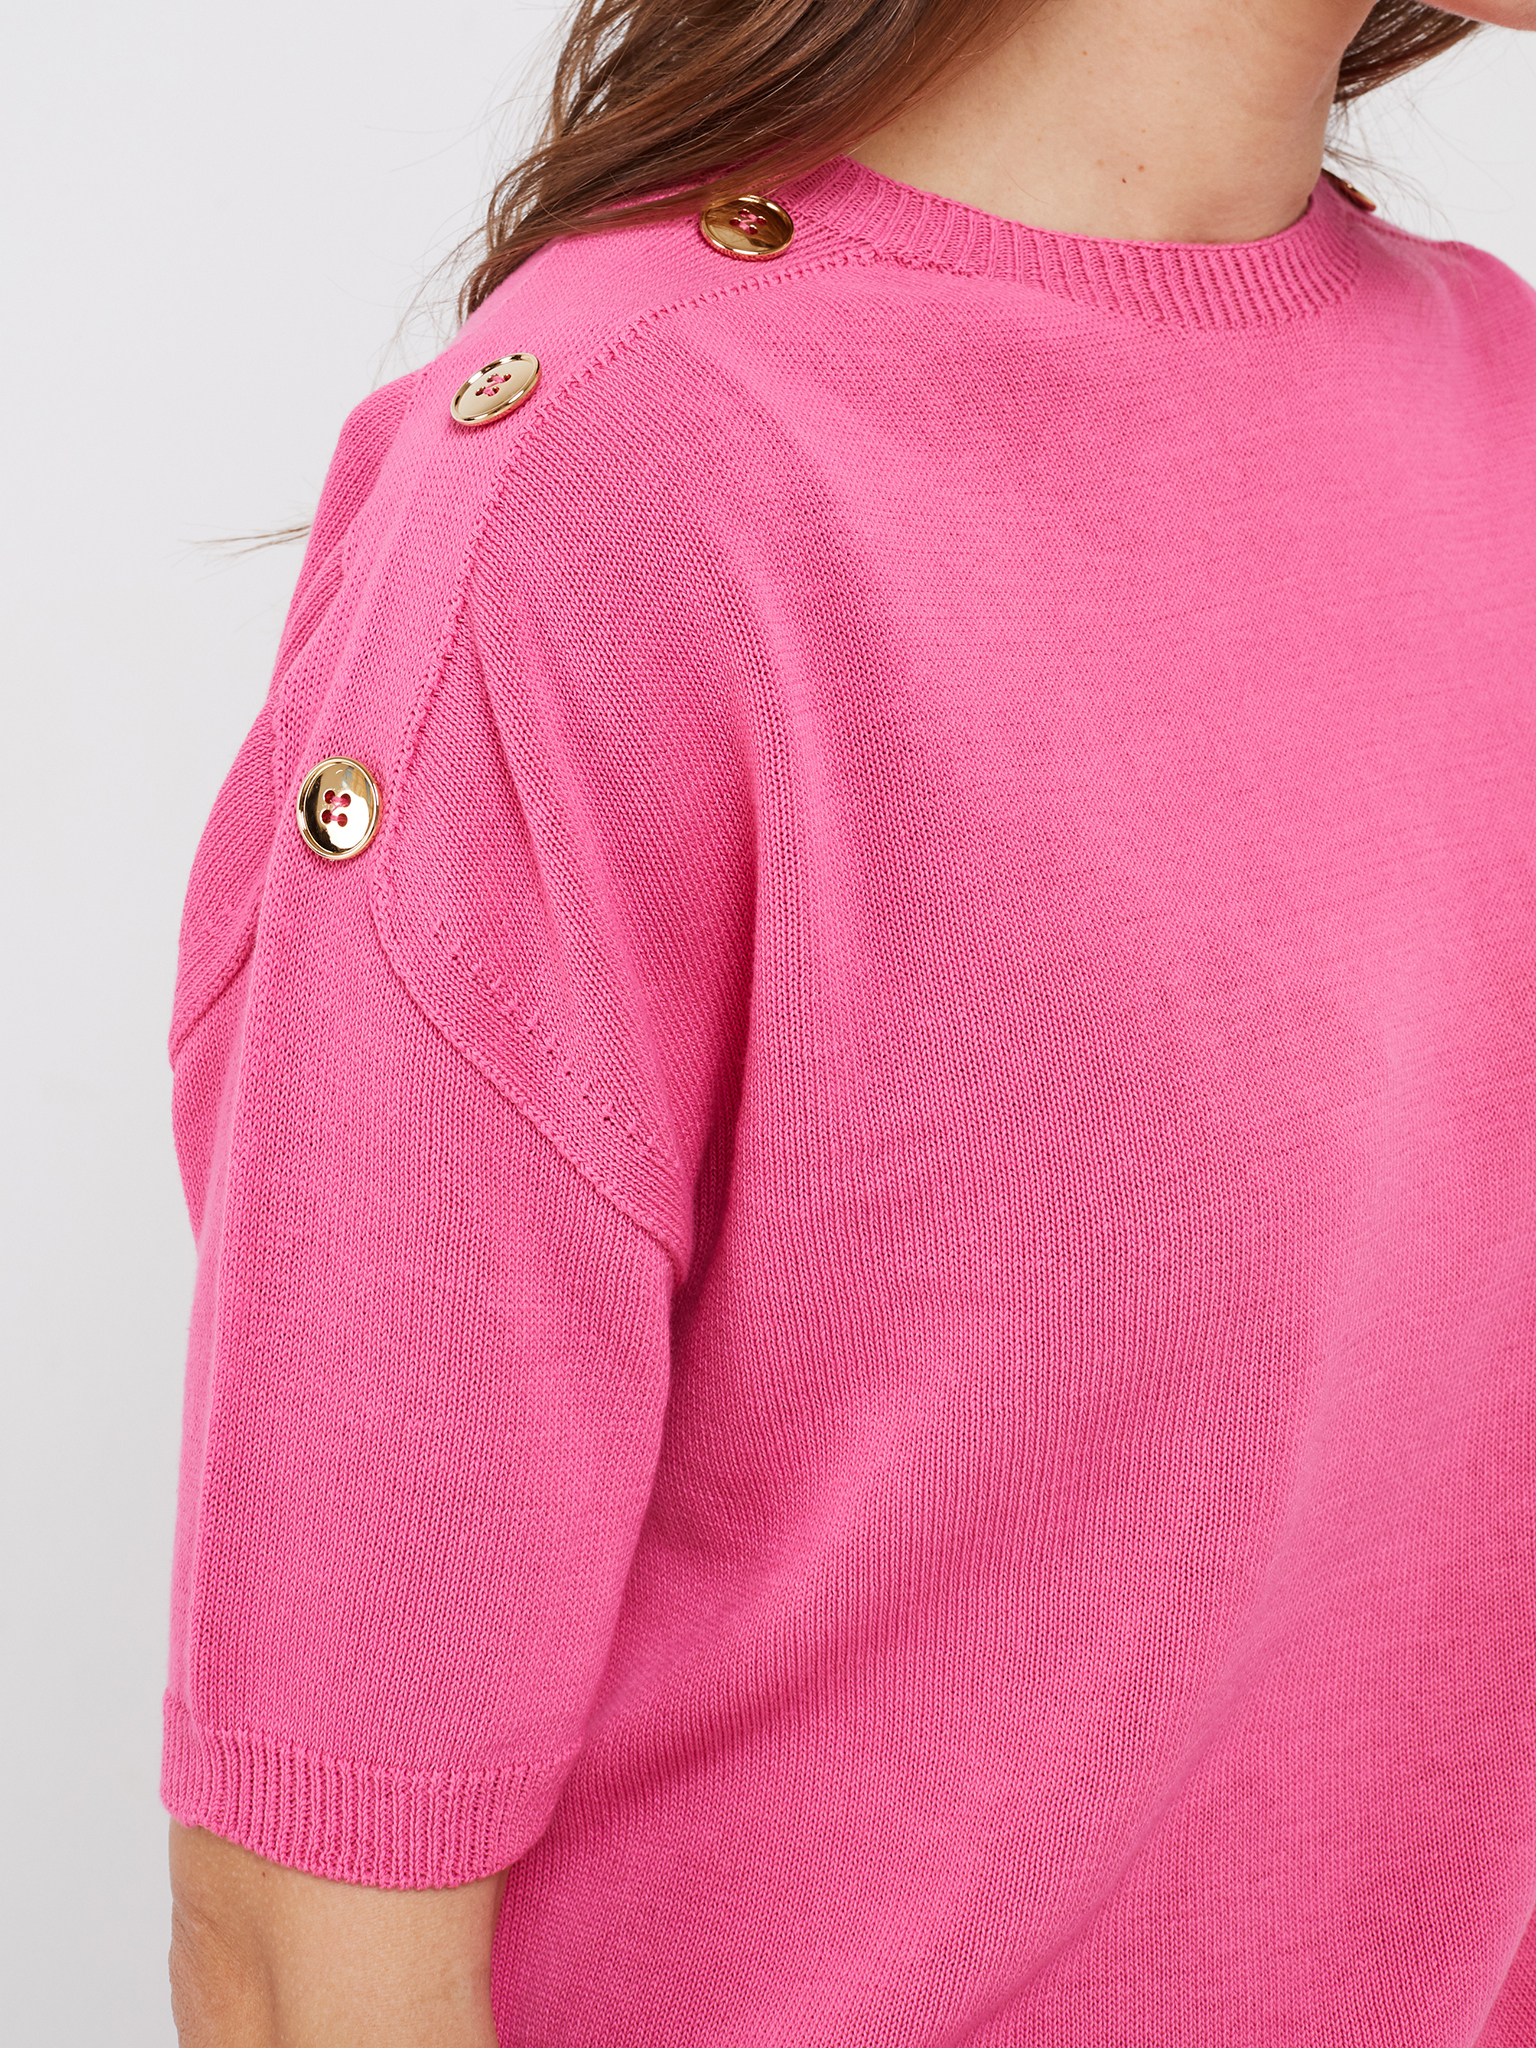 Pullover Pink mit kurzen Armen und goldenen Zierknöpfen